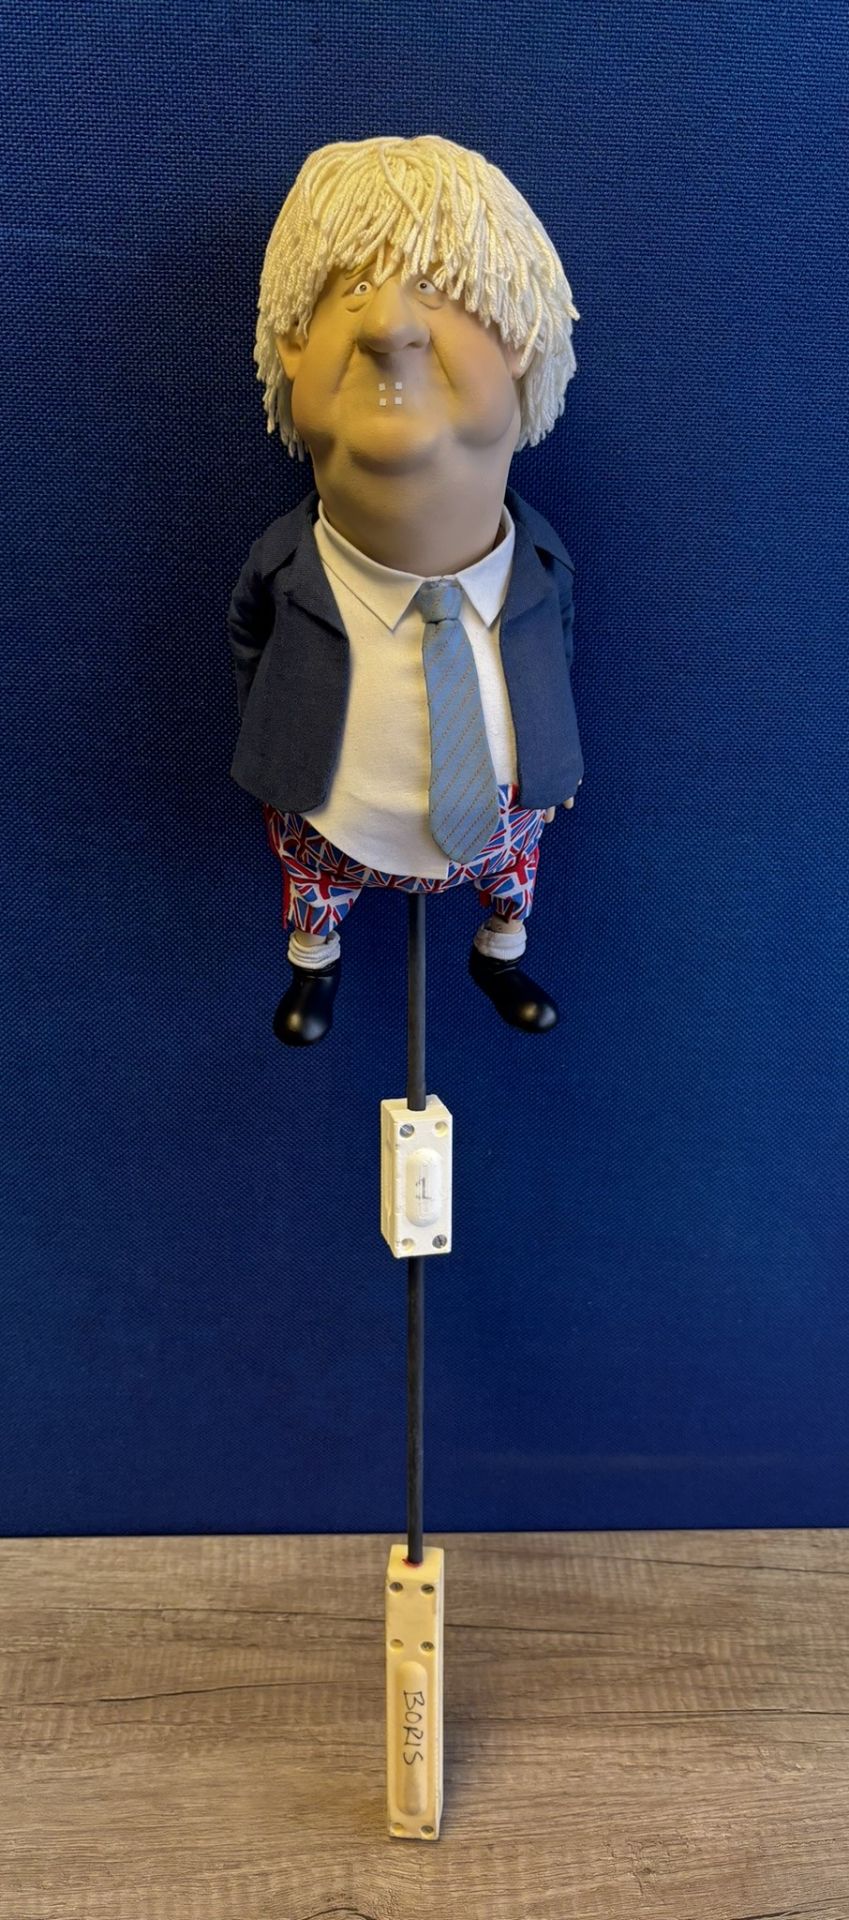 Newzoid puppet - Boris Johnson - Image 3 of 3